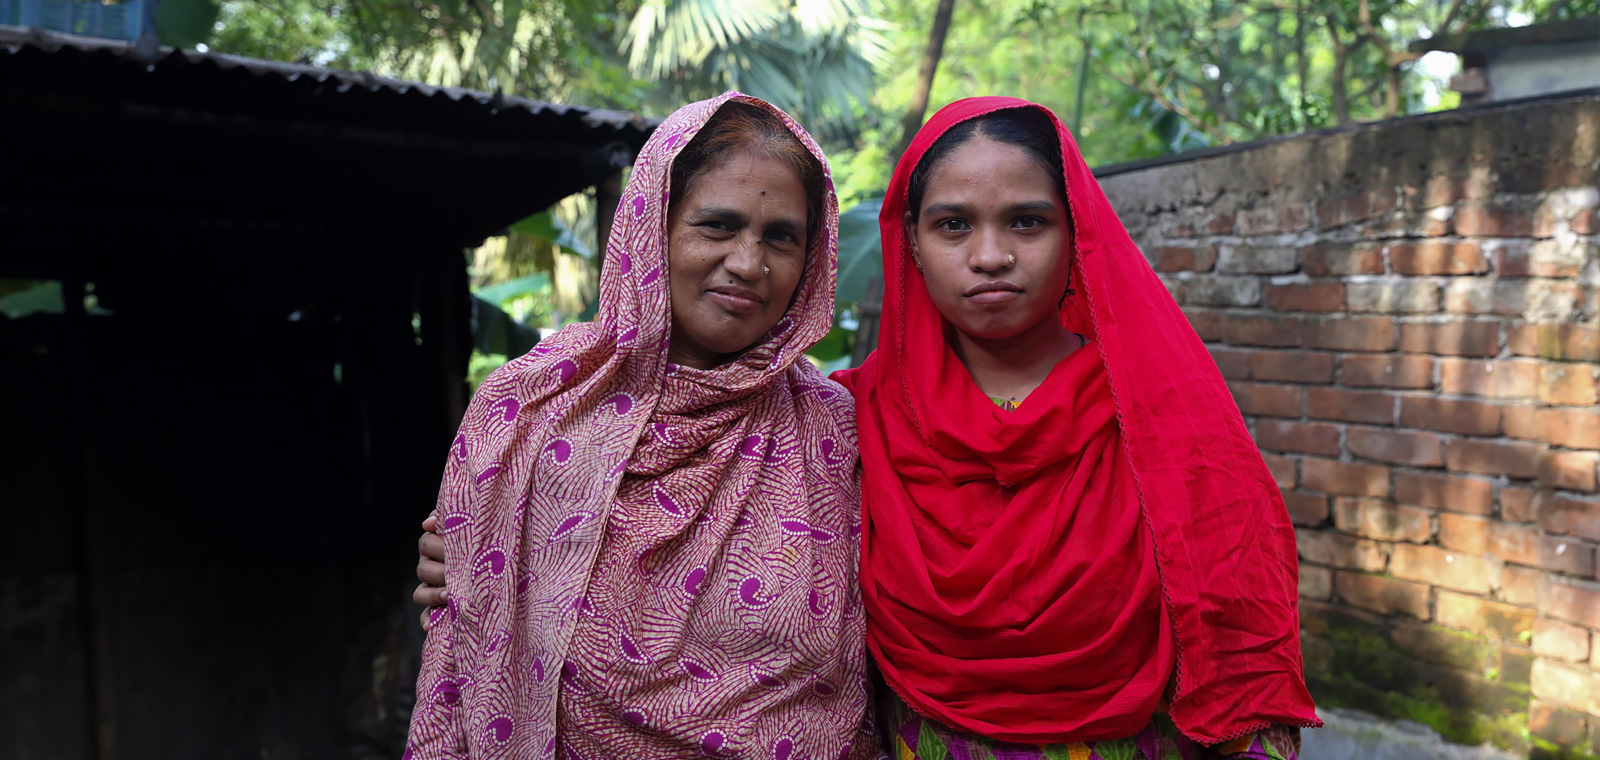 Rita, a garment maker in Bangladesh, What She Makes, Photo: Fabeha Monir/Oxfam AUS